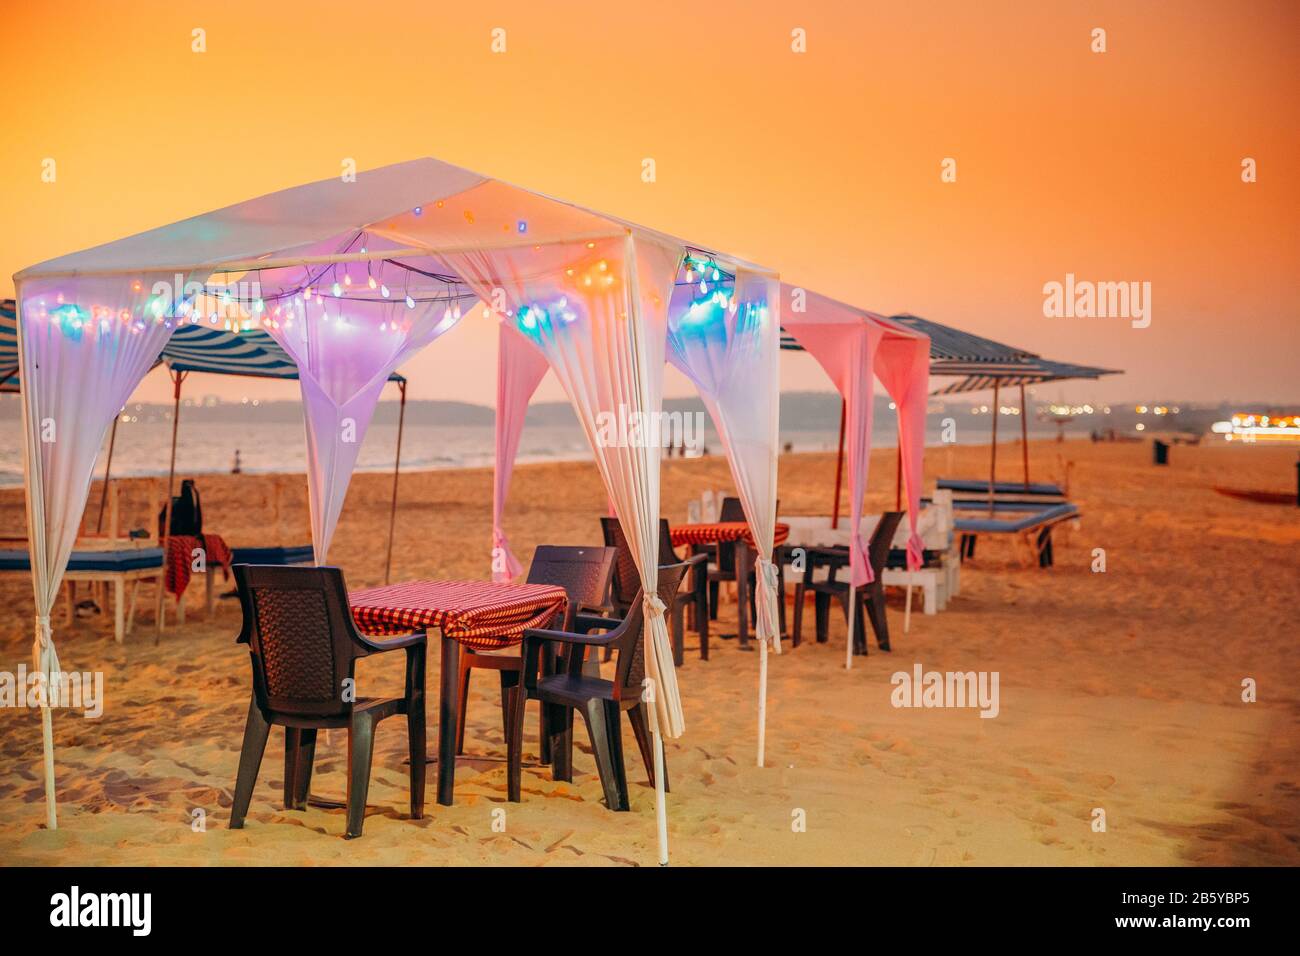 Goa, India. Gazebo Tende Con Lampada Per Turisti In Spiaggia Con Tavoli E Sedie All'Interno In Sunset Time. Foto Stock